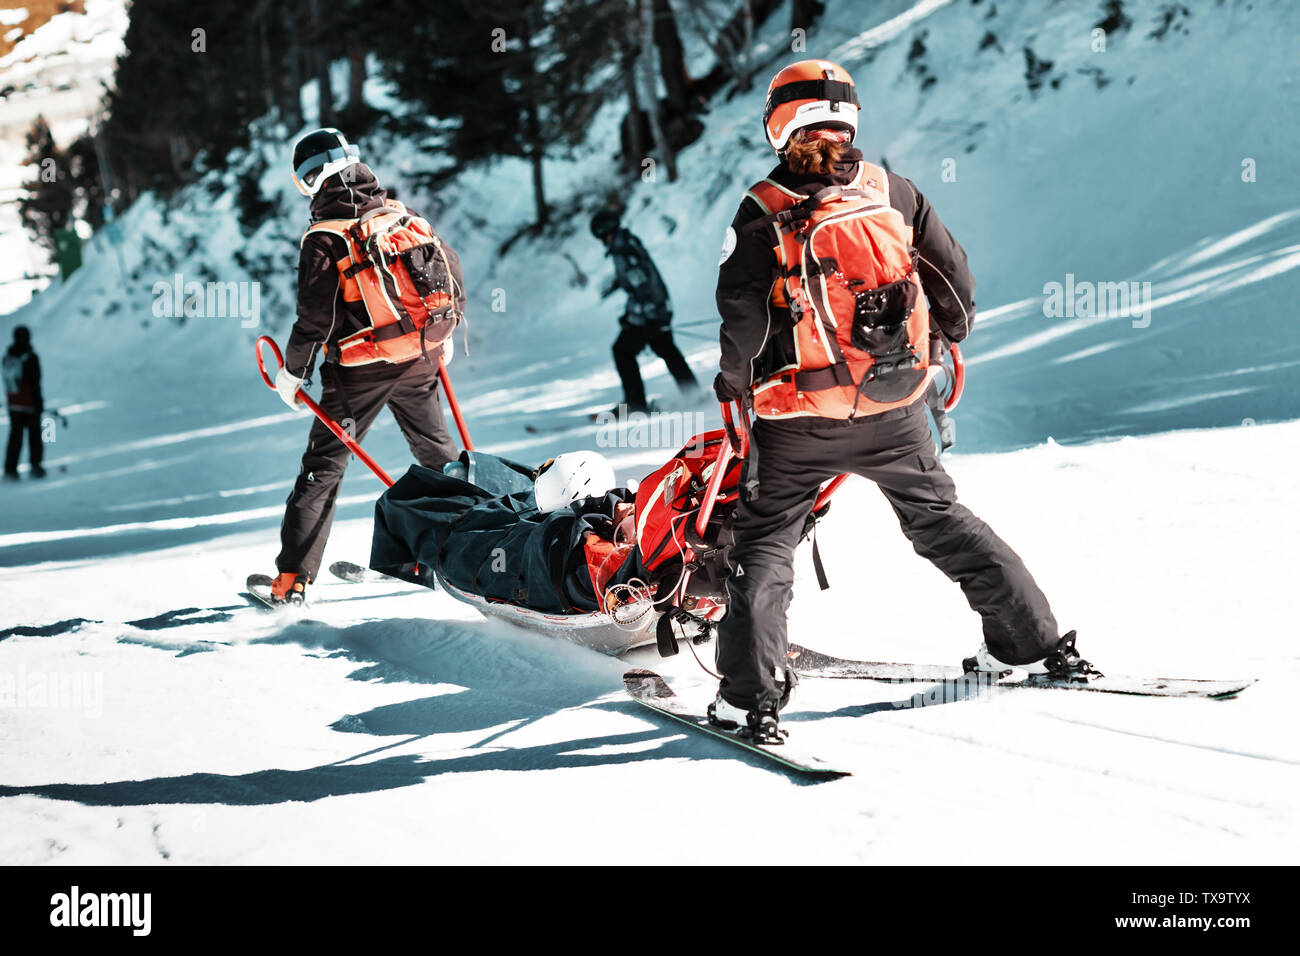 Les sauveteurs dans une station de ski d'évacuer la victime de la pente. Deux sauveteurs descendre un touriste sur une luge spécial sur une journée d'hiver ensoleillée. Blurred background Banque D'Images